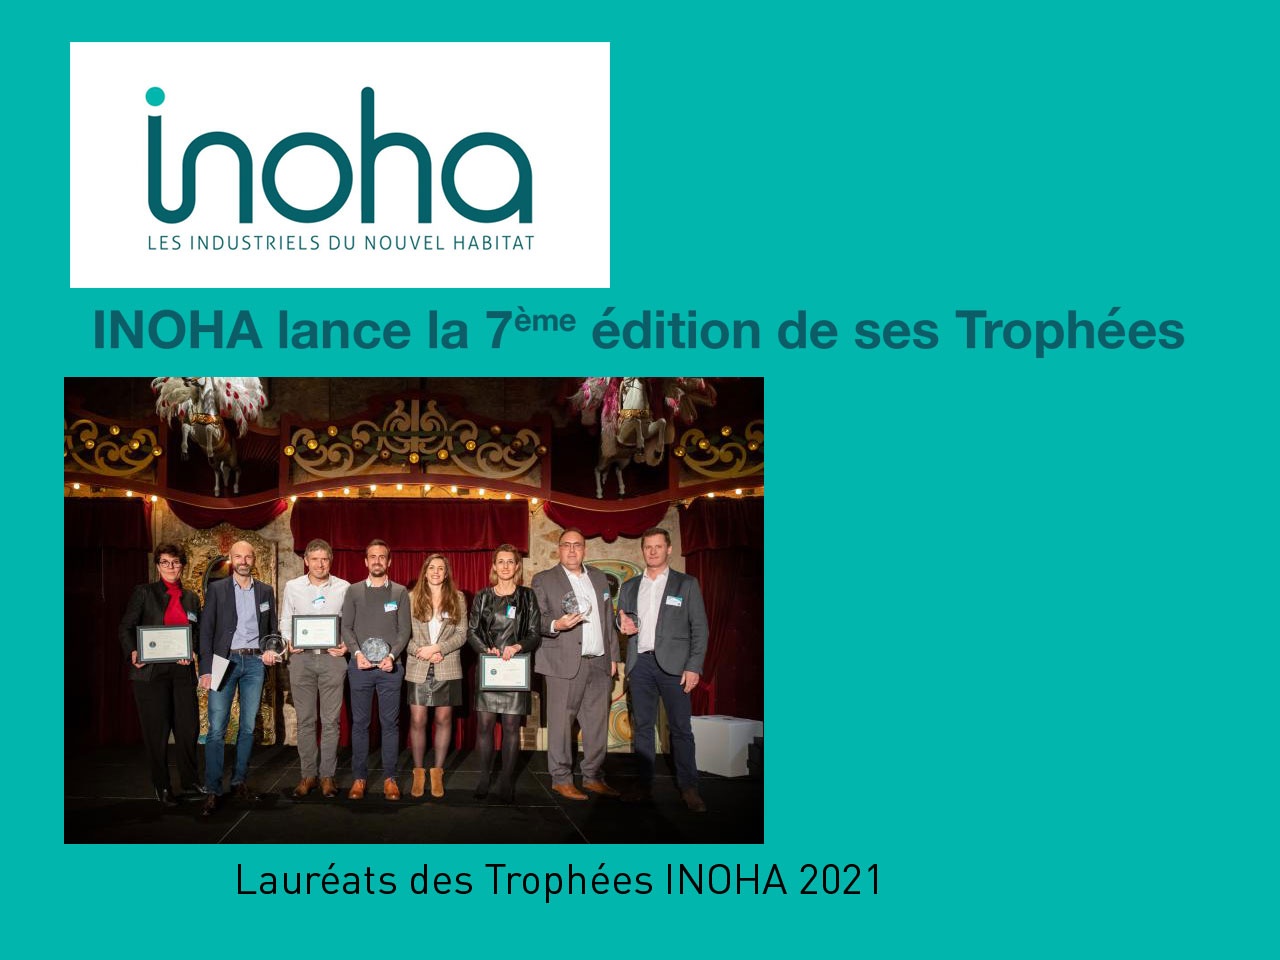 INOHA lance la 7ème édition de ses Trophées